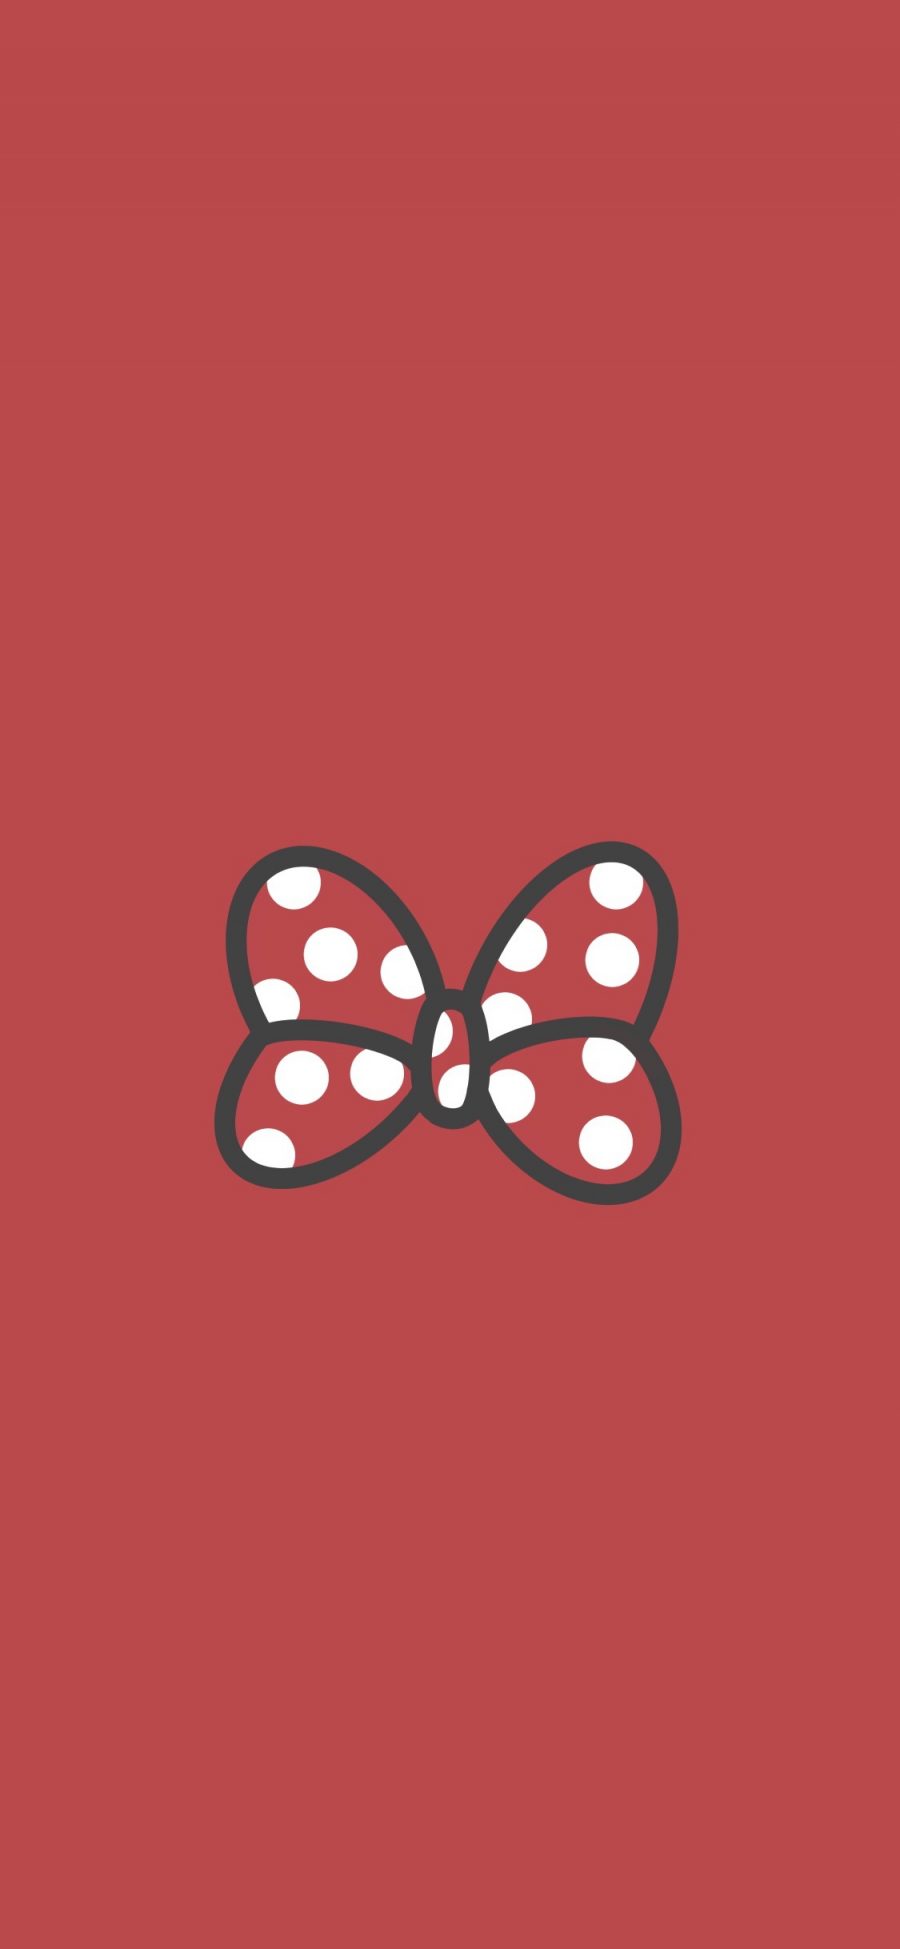 [2436×1125]蝴蝶结 迪士尼 斑点 红 苹果手机动漫壁纸图片